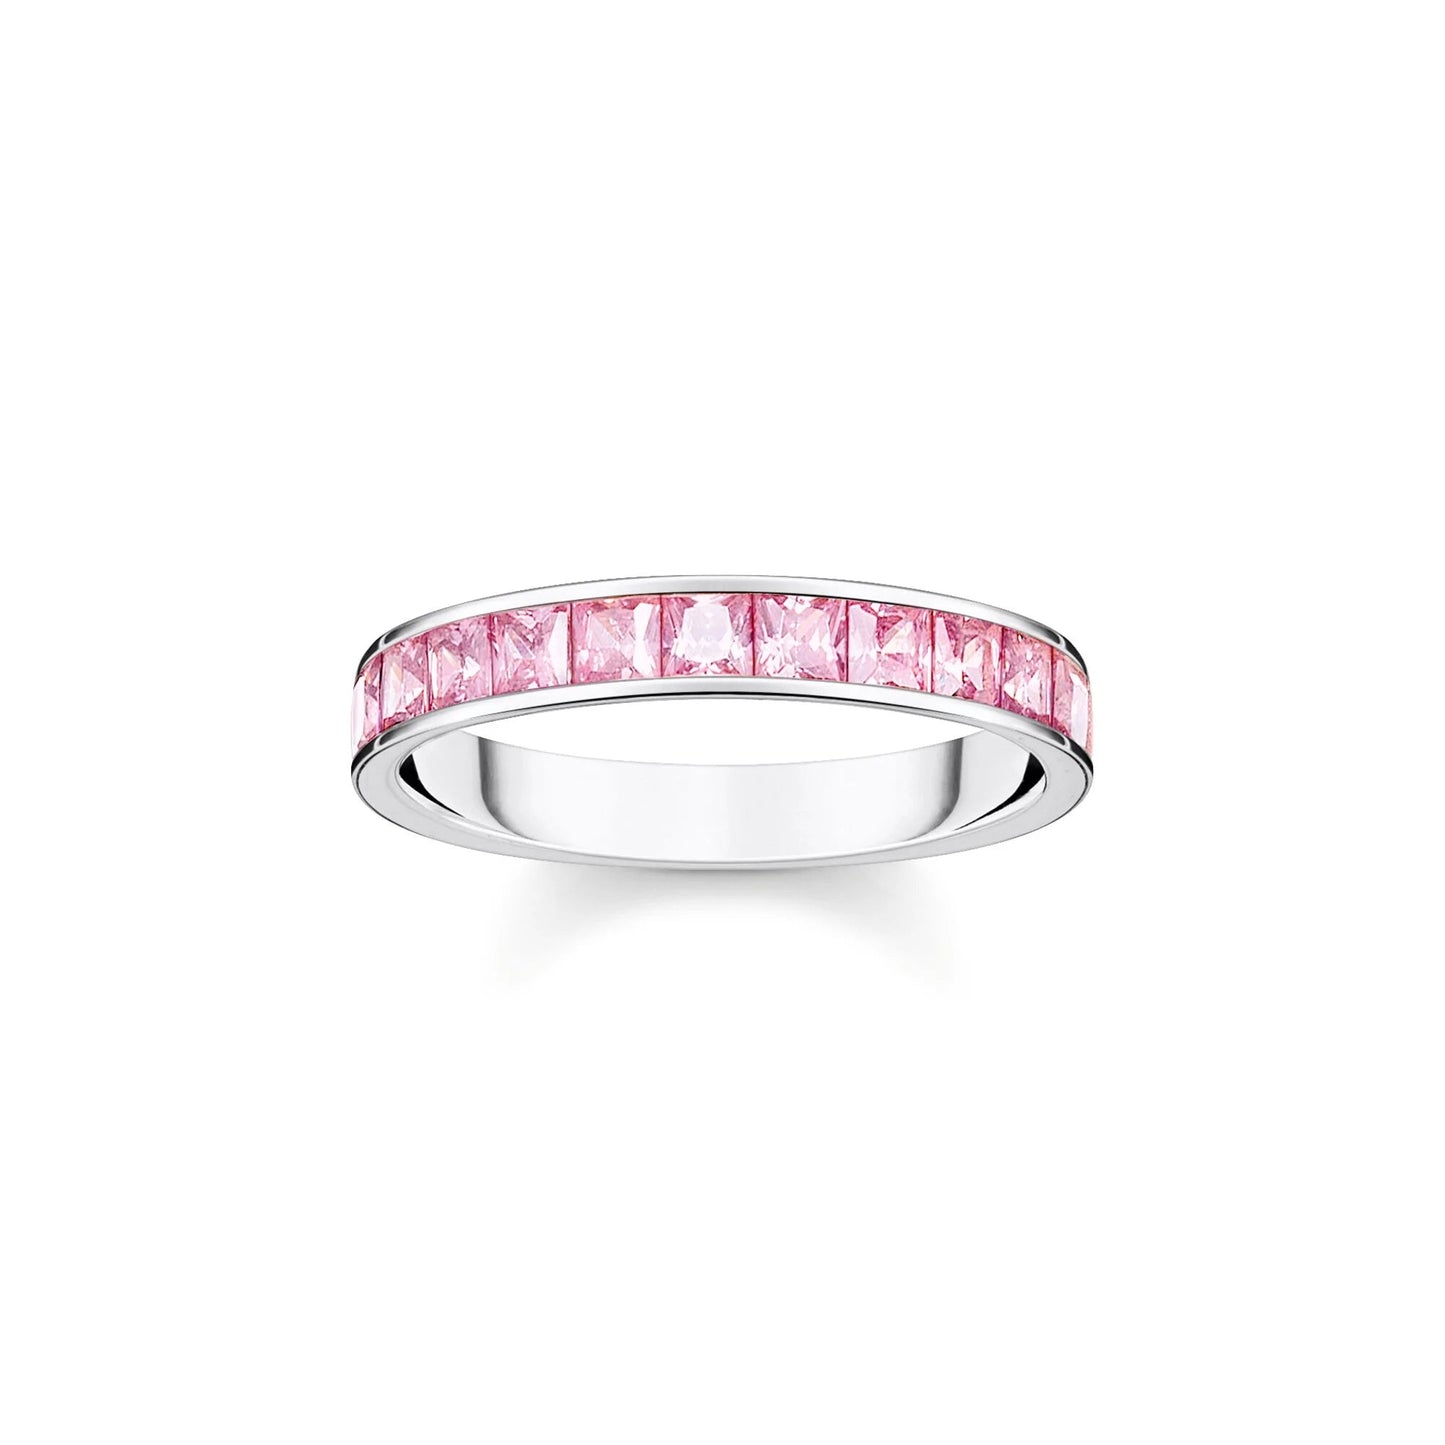 THOMAS SABO Heritage Pink Pave Silver Band Ring